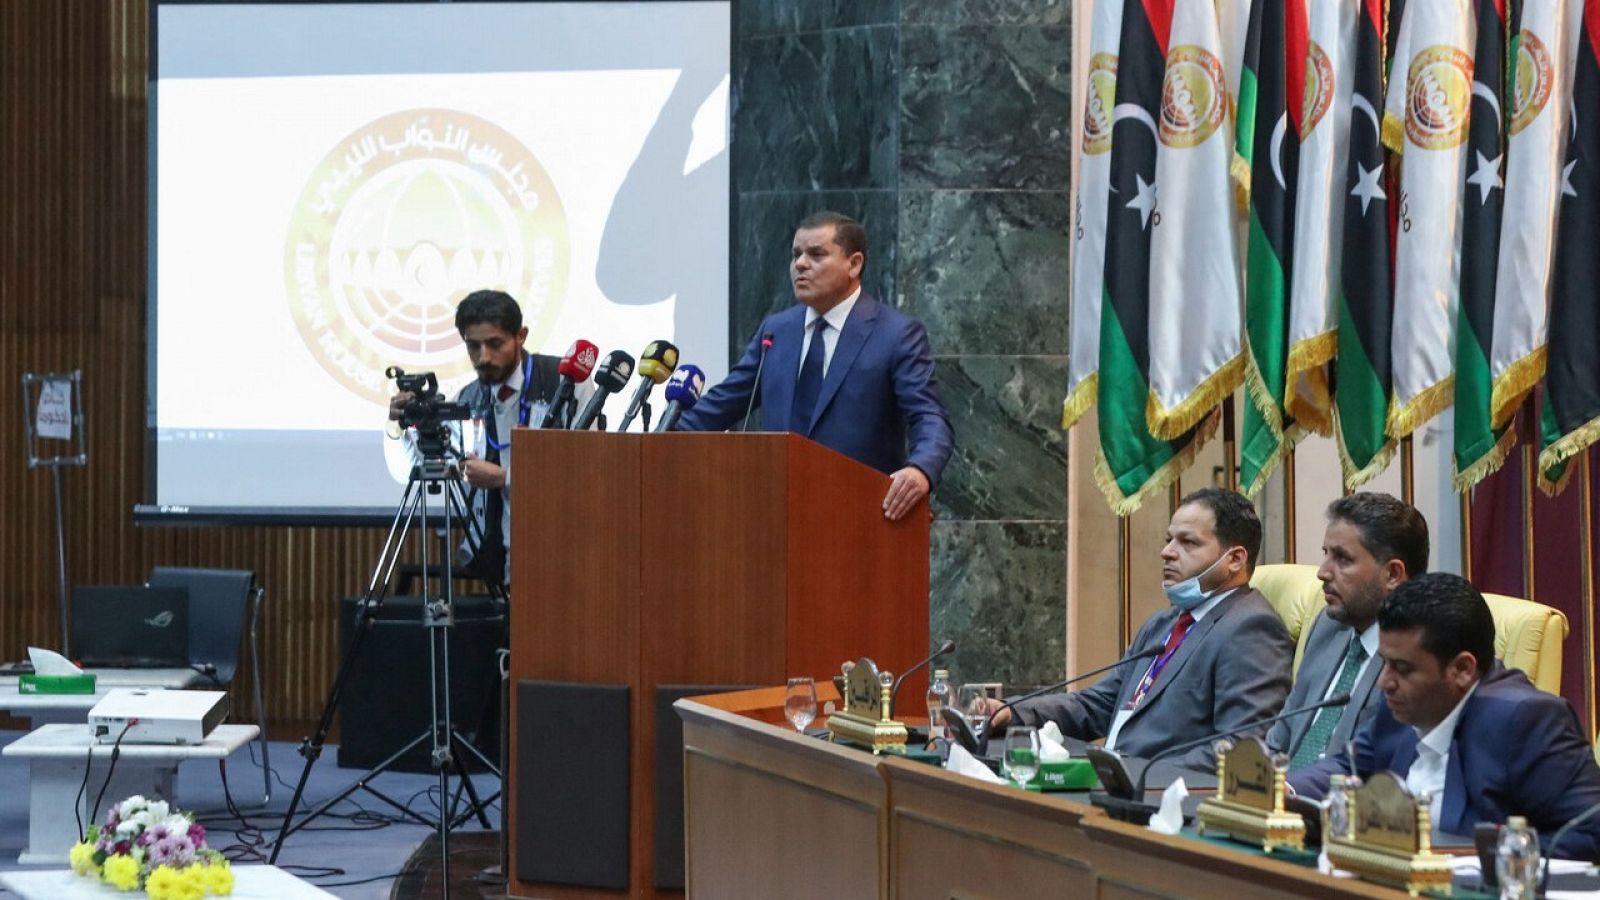 El nuevo primer ministro libio, Abdul Hamid Dbeibah, se dirige al Parlamento